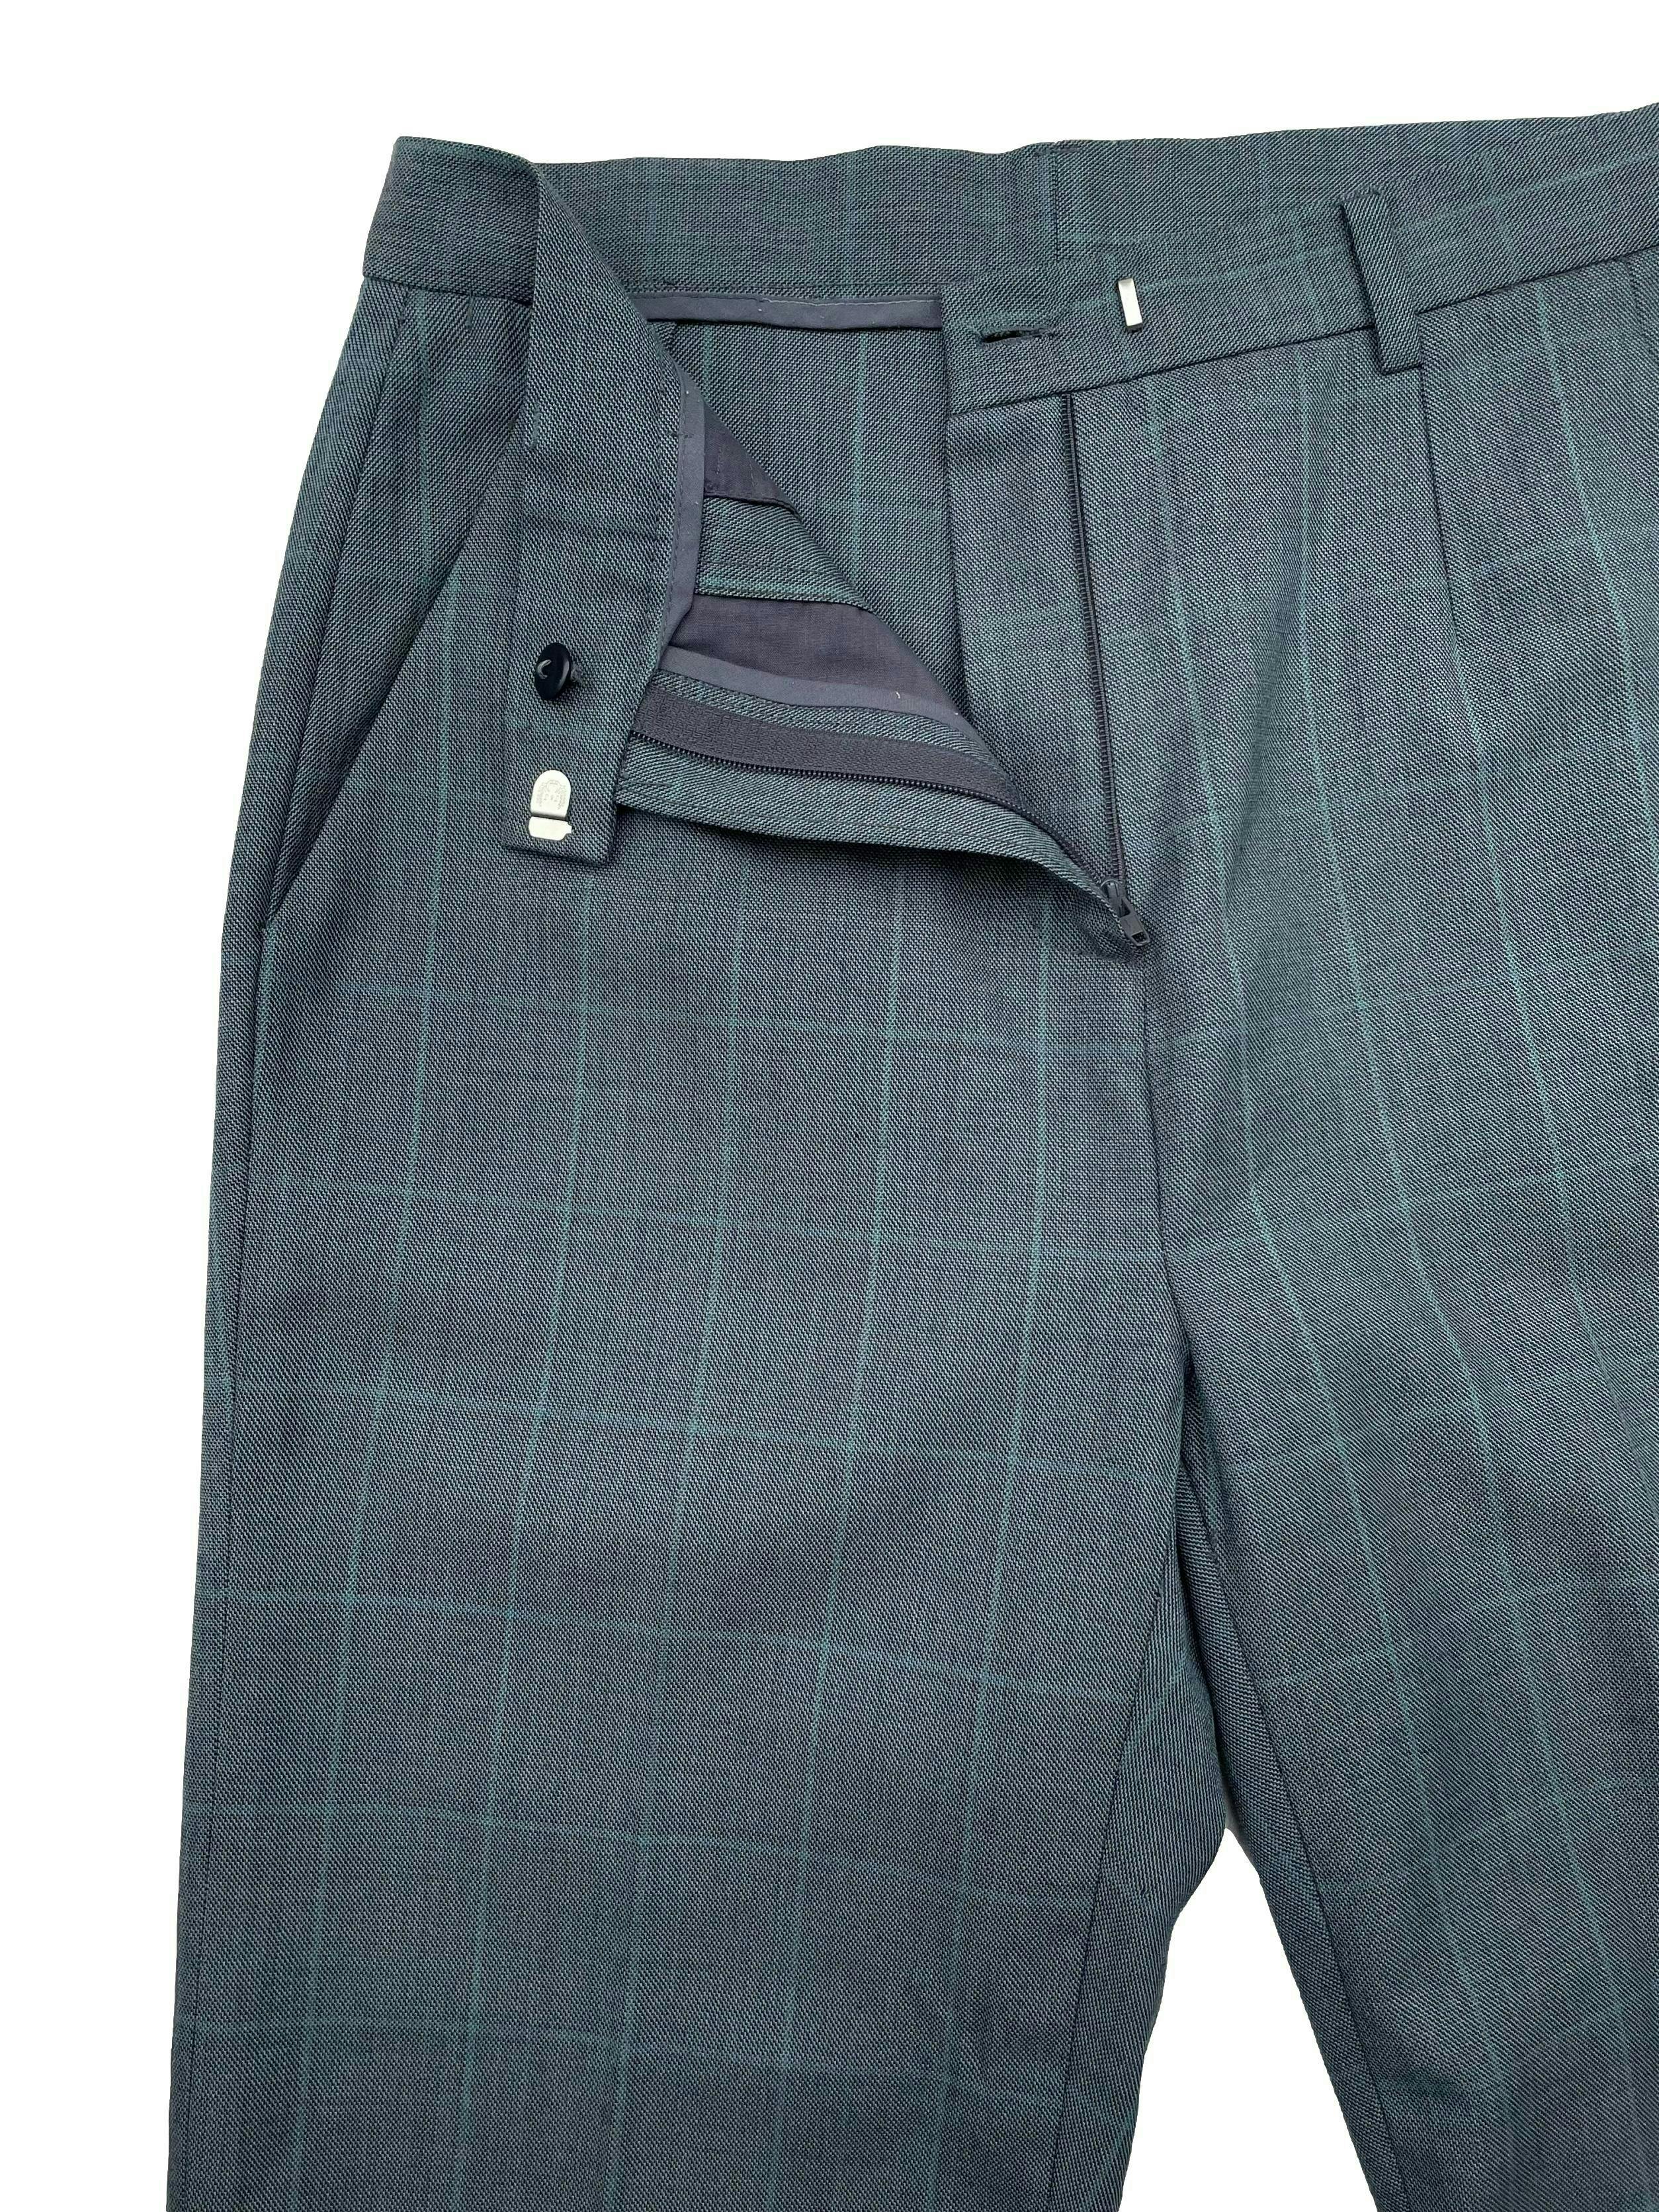 Pantalón de lanilla delgada a cuadros en gris y verde, con bolsillos y cierre frontal. Cintura 72cm, Tiro 29 cm, Largo 94cm.